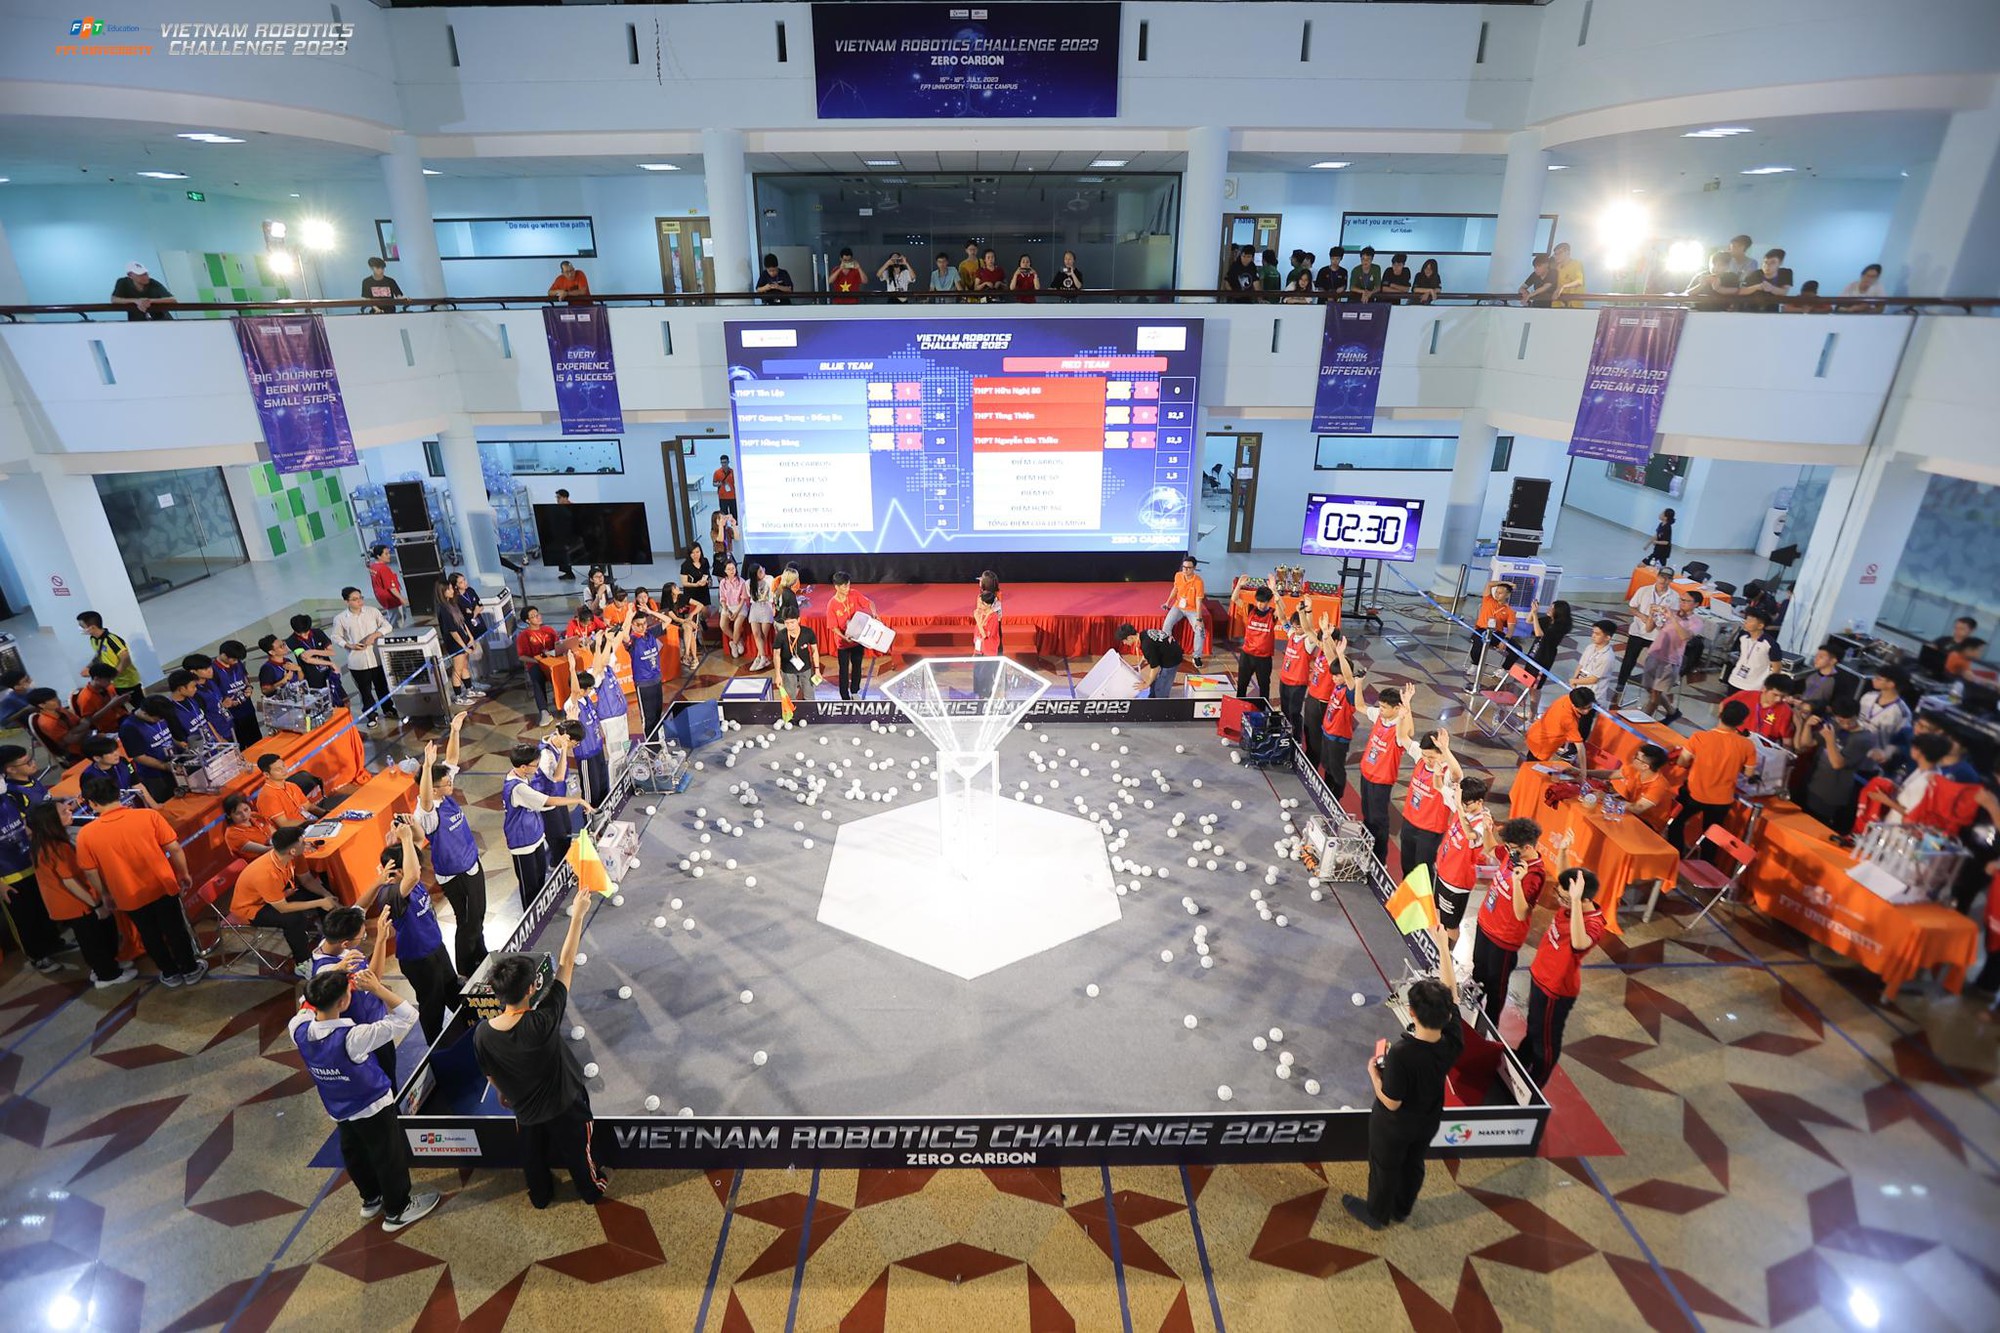 THPT Đoàn Thị Điểm và THPT Hai Bà Trưng - Thạch Thất nâng cúp vô địch Vietnam Robotics Challenge 2023 - Ảnh 1.